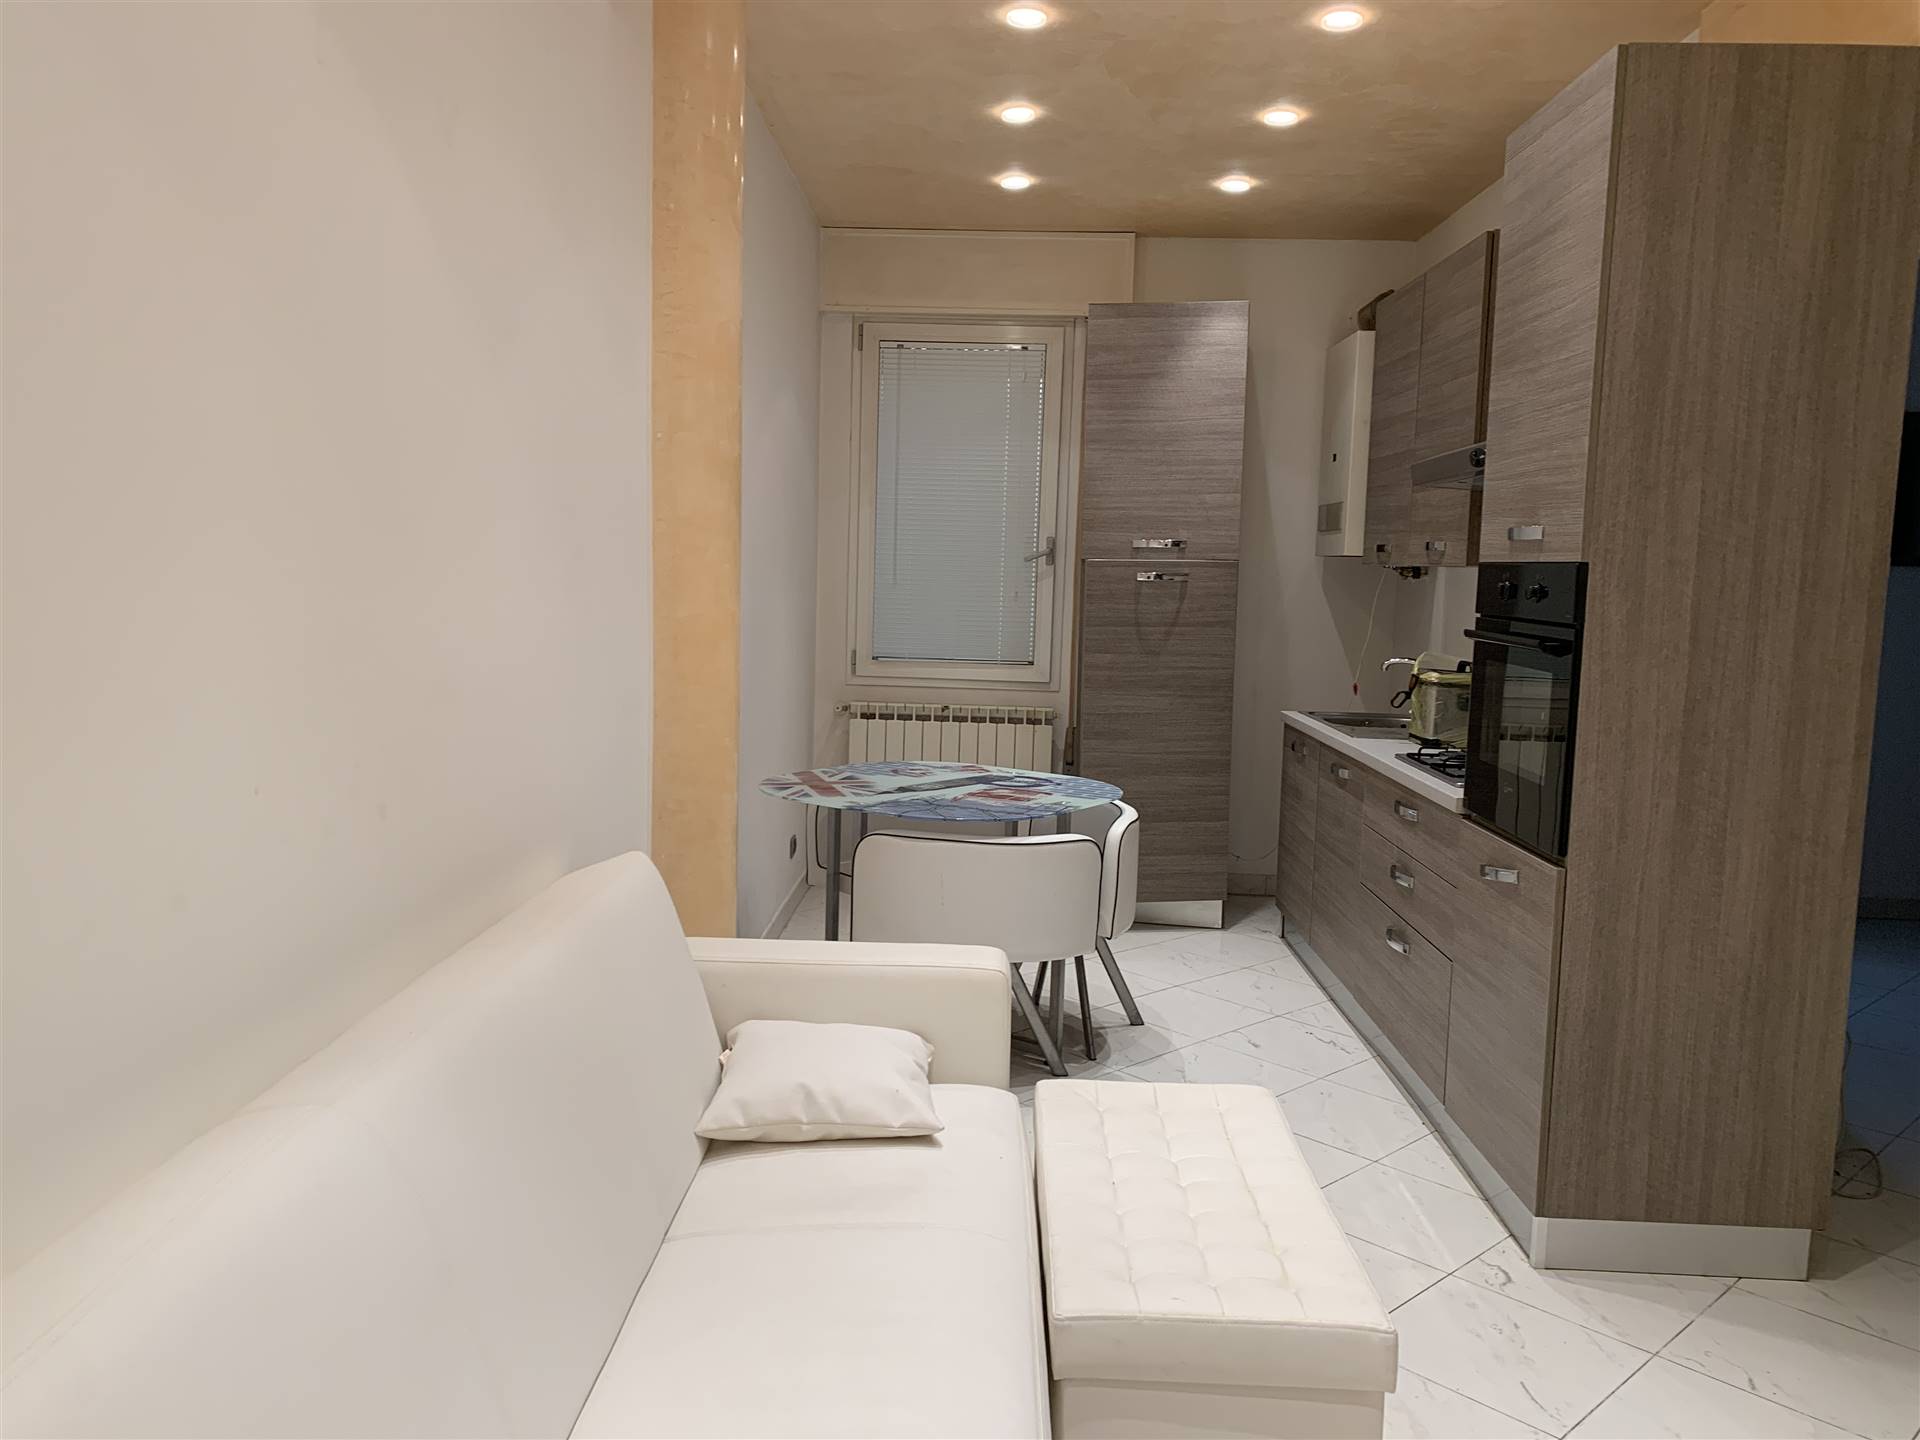 Appartamento in affitto a Chioggia, 2 locali, zona Zona: Sottomarina, prezzo € 550 | CambioCasa.it